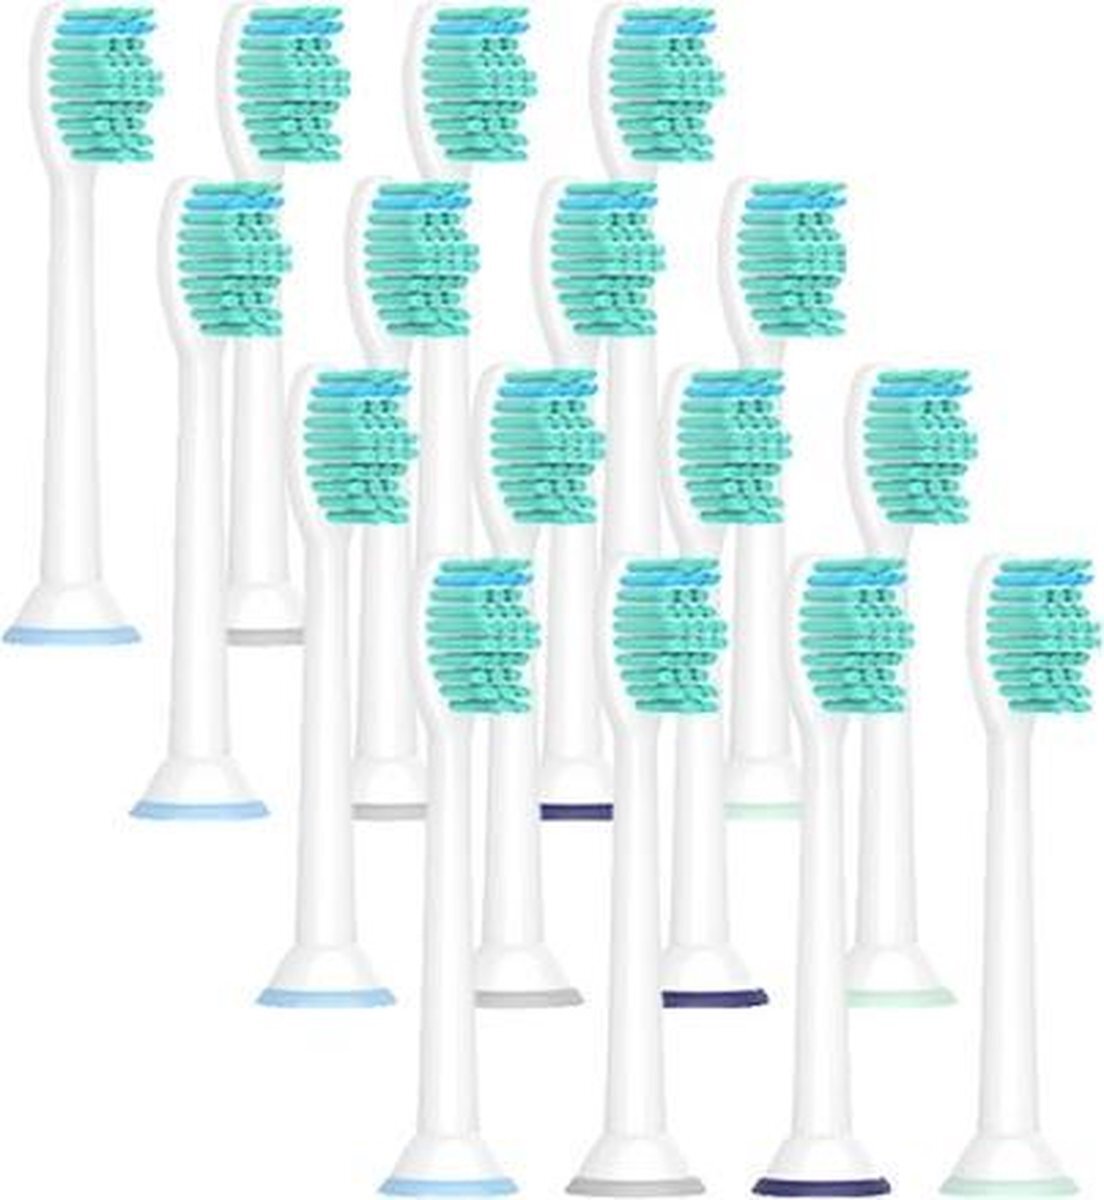 VoordeligeTandenborstels.nl 16 Opzetborstels voor elektrische tandenborstels van Philips Sonicare